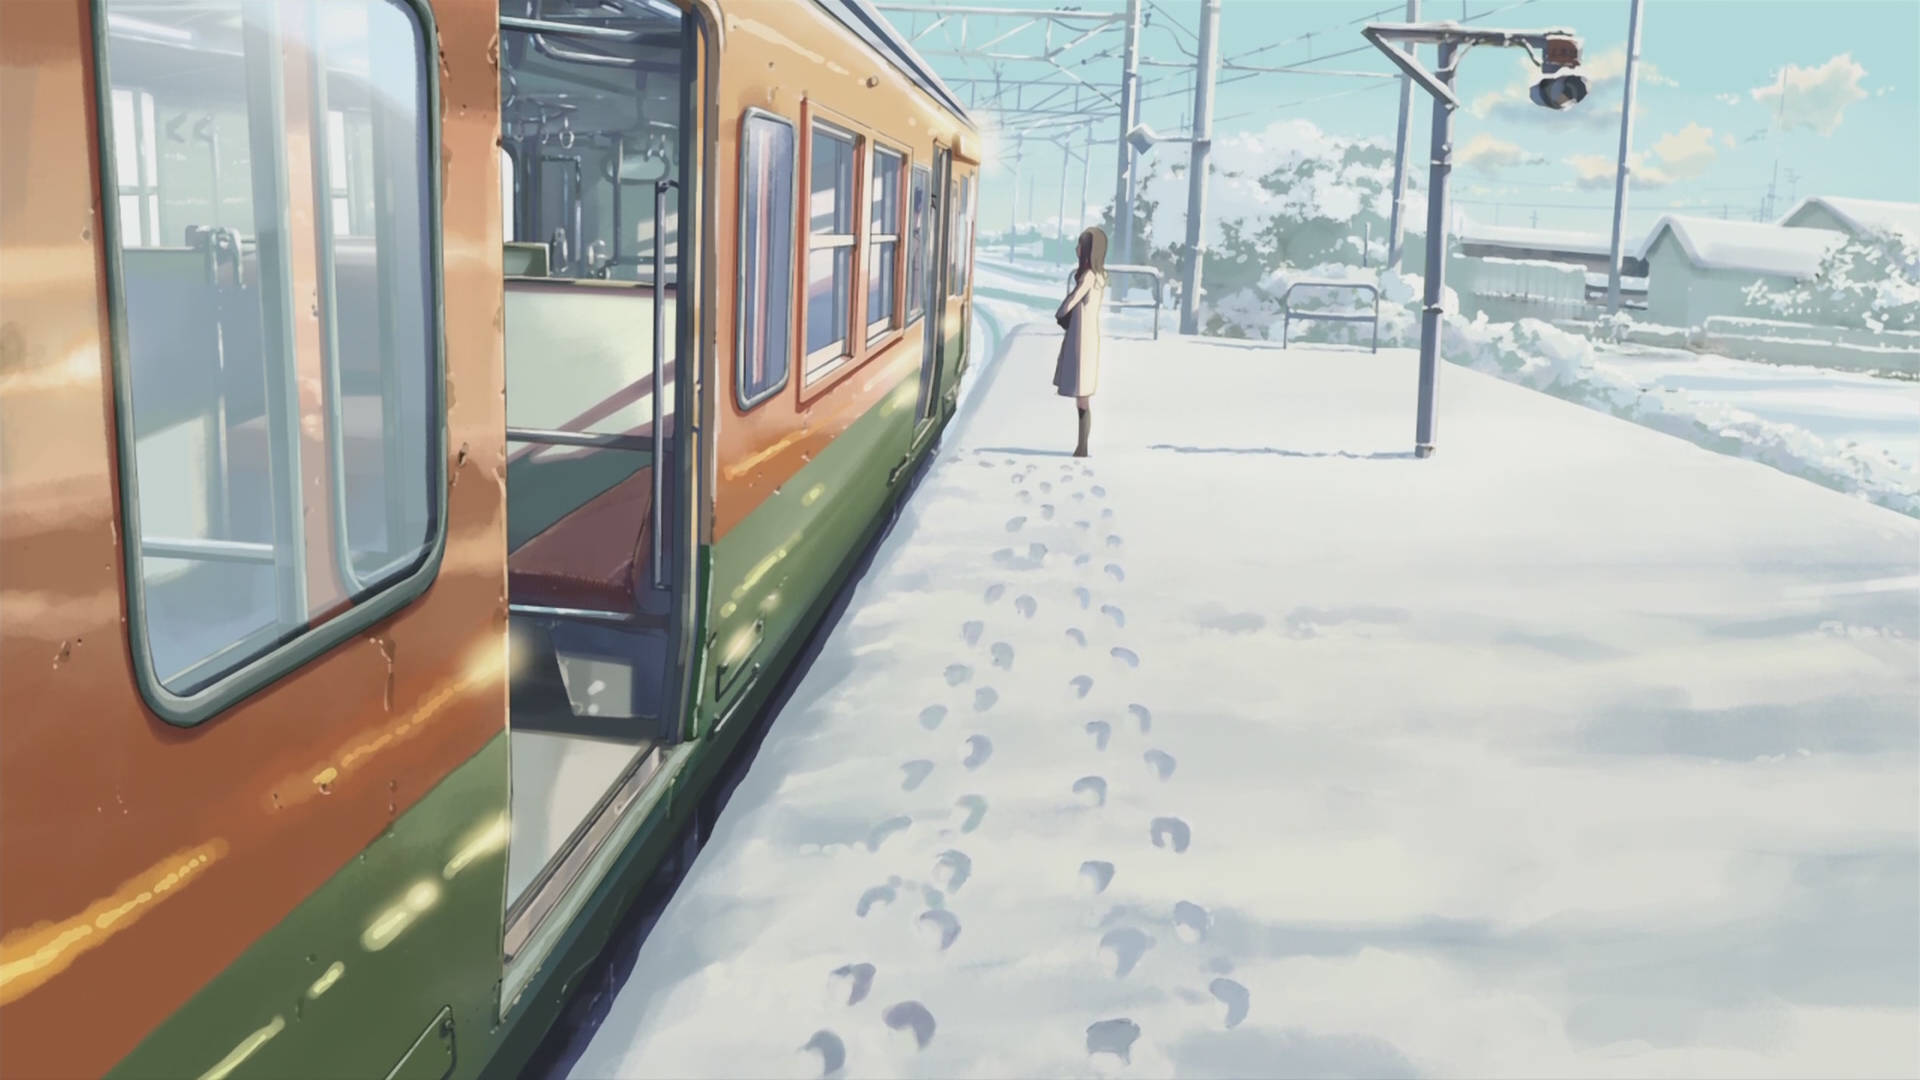 Makoto Shinkai Film Snow Train Aesthetic Background